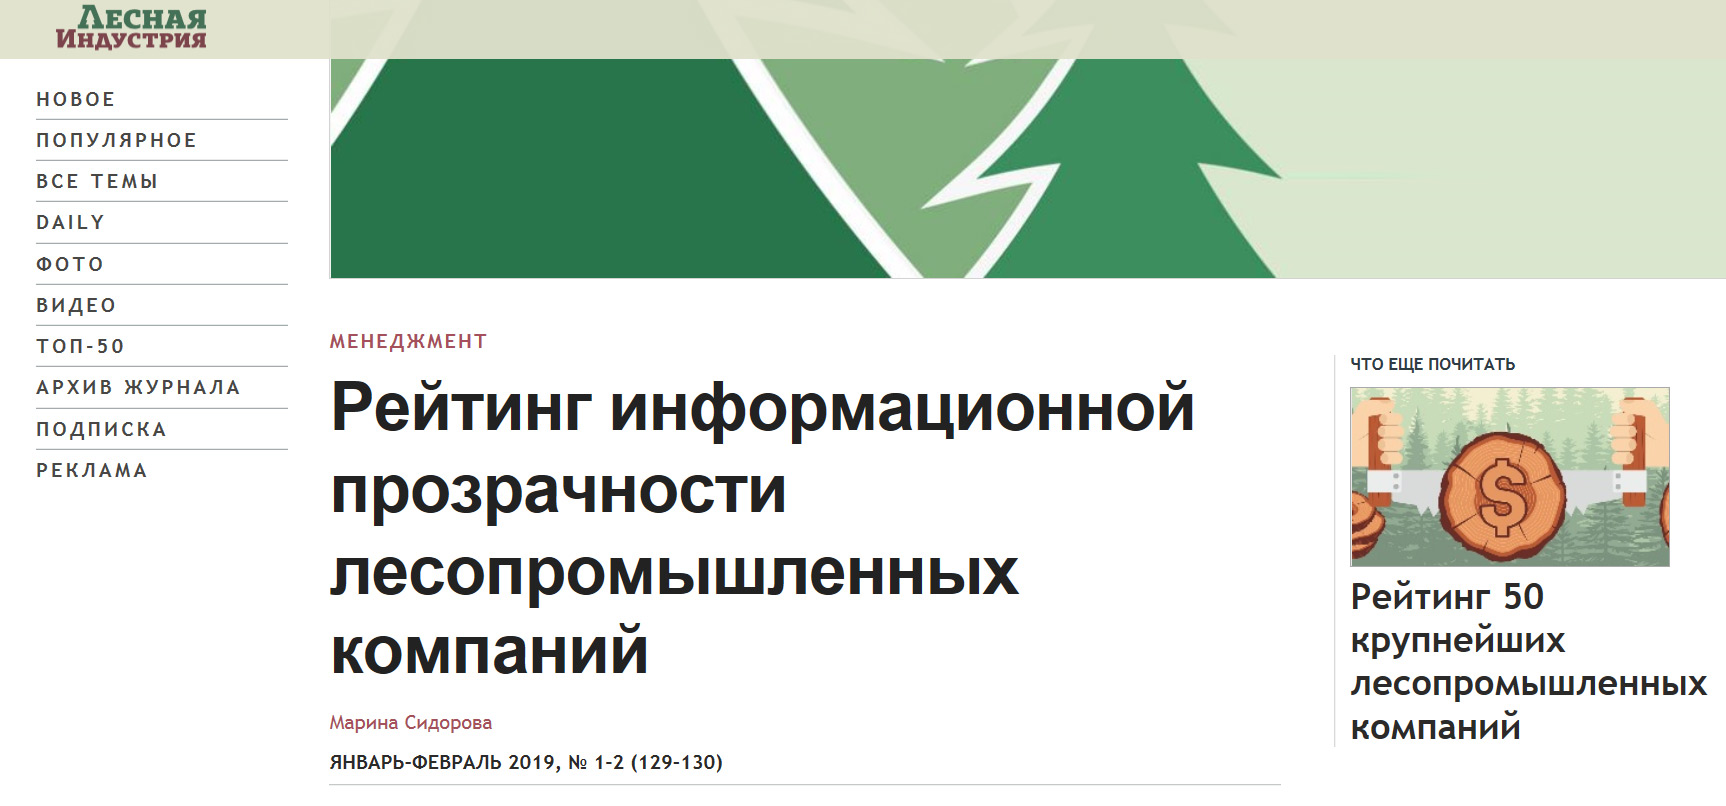 Группа «Илим» заняла первое место в рейтинге информационной прозрачности компаний ЛПК России